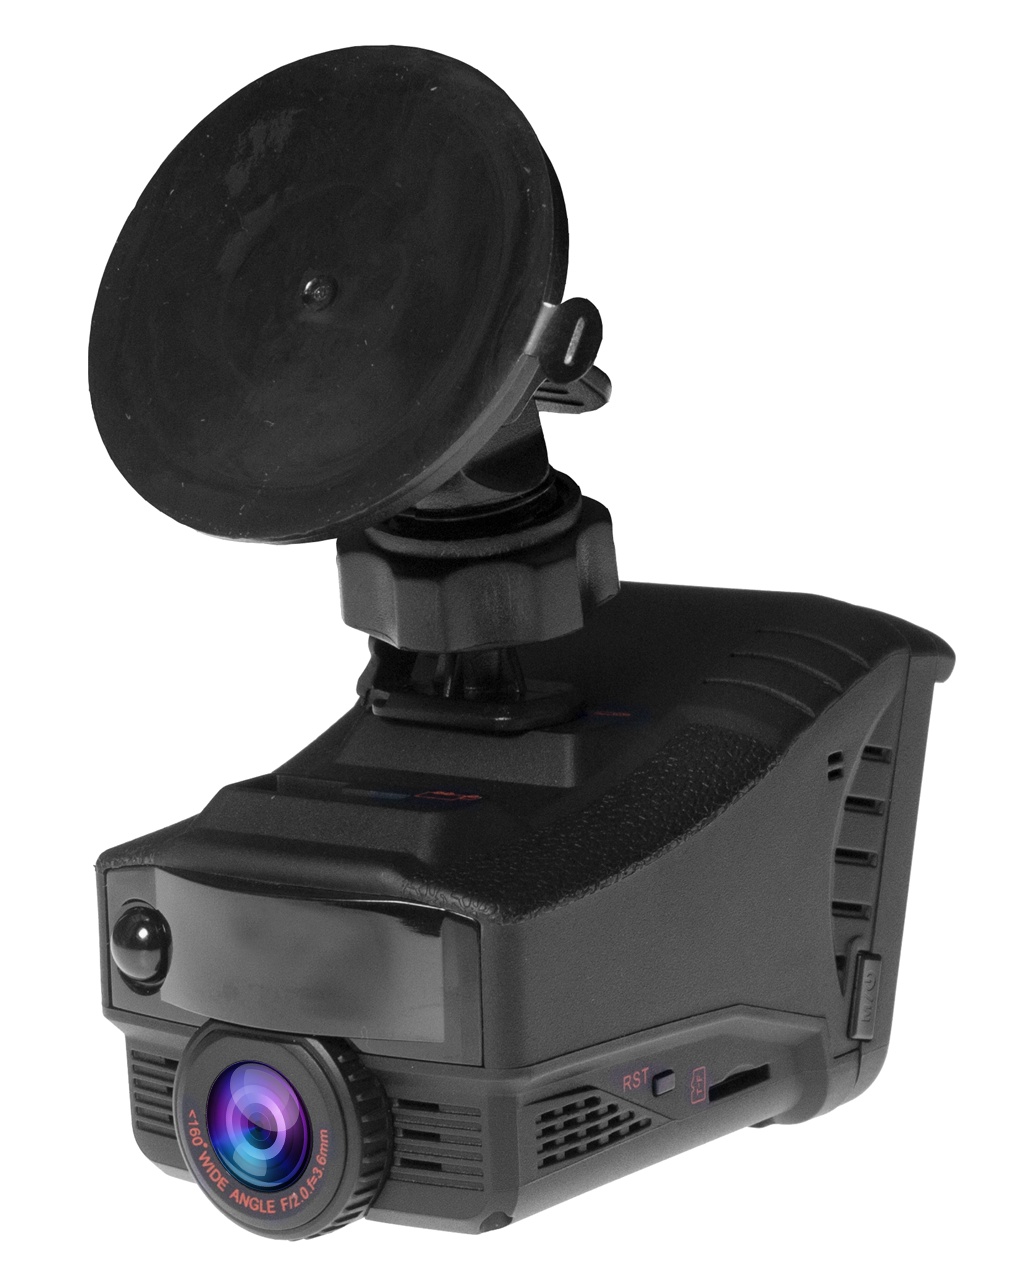 фото Автомобильный видеорегистратор с радар-детектором 5 в 1 CARCAM COMBO 5S, черный Каркам